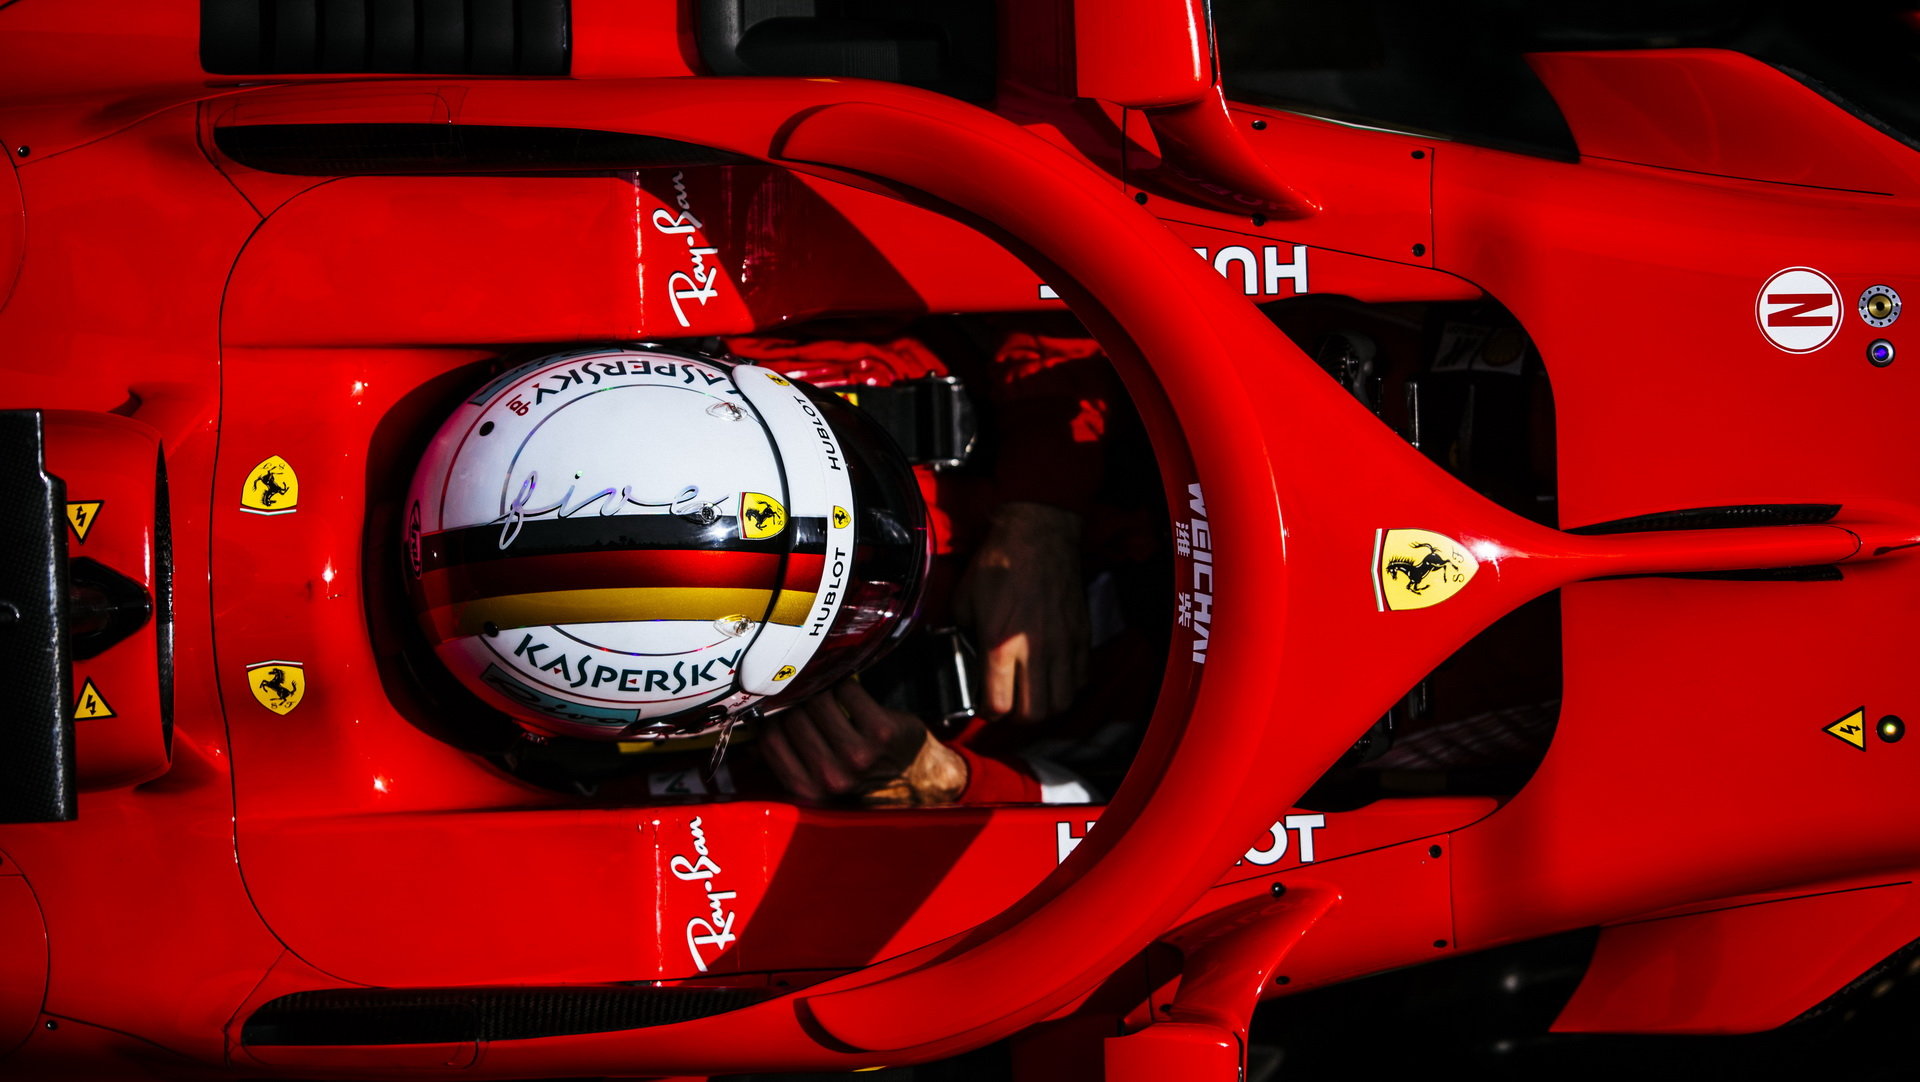 Co se během startu odehrává v kokpitu Ferrari?